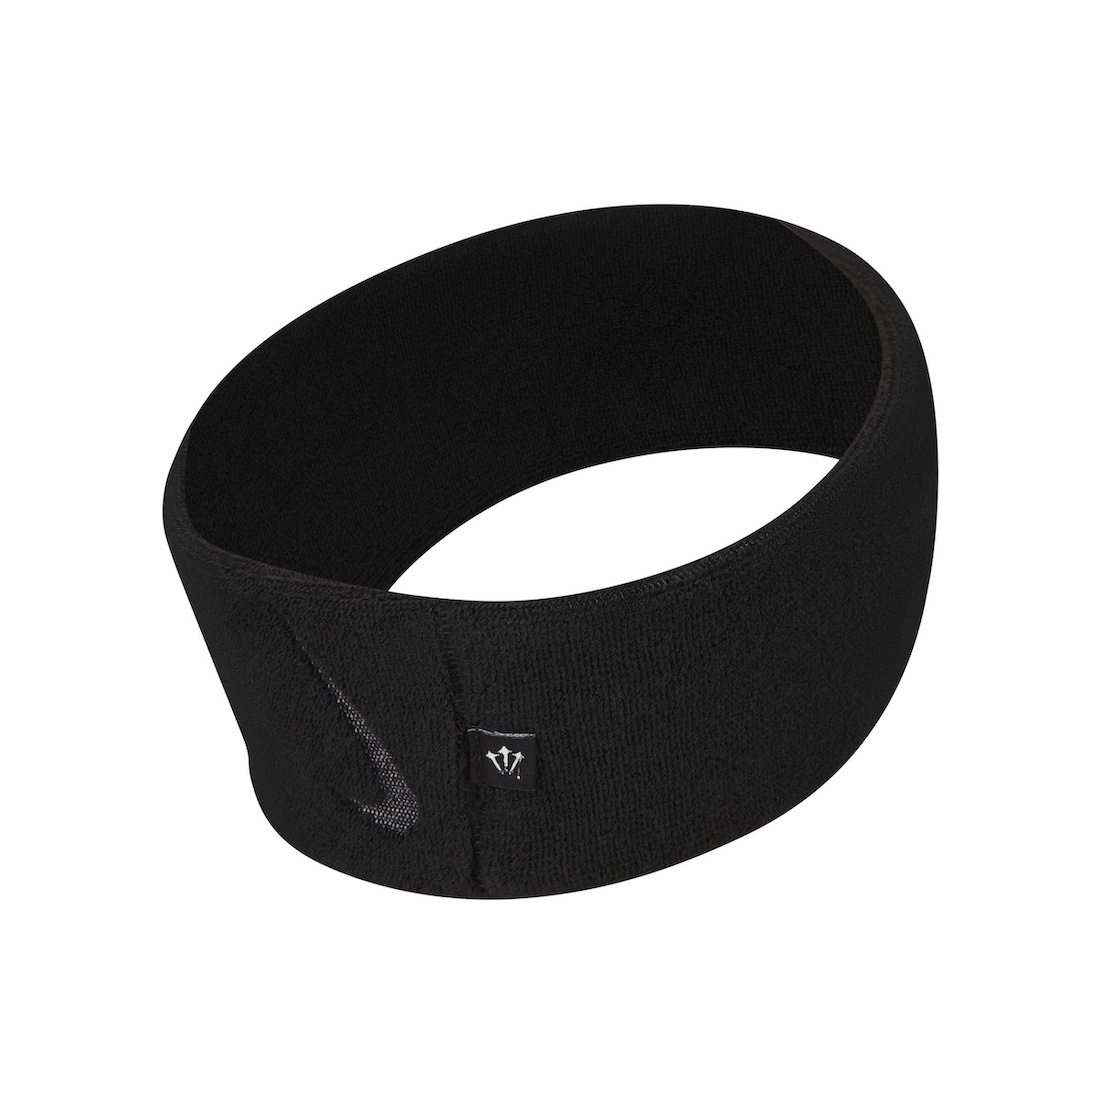 nocta-headband-N1008193-001-2.jpg